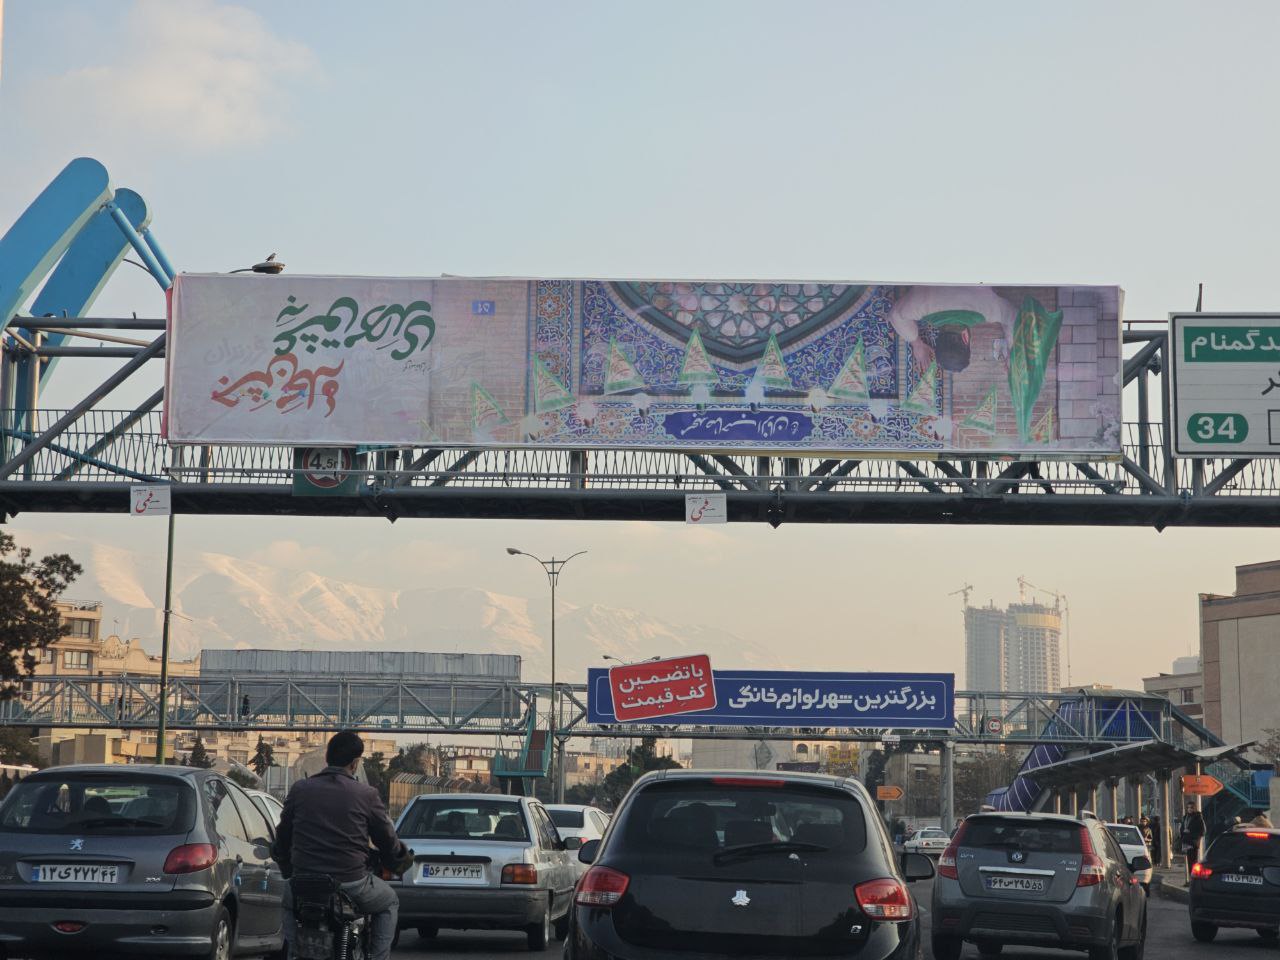 یک گاف بزرگ در بنر نصب شده در سطح شهر تهران